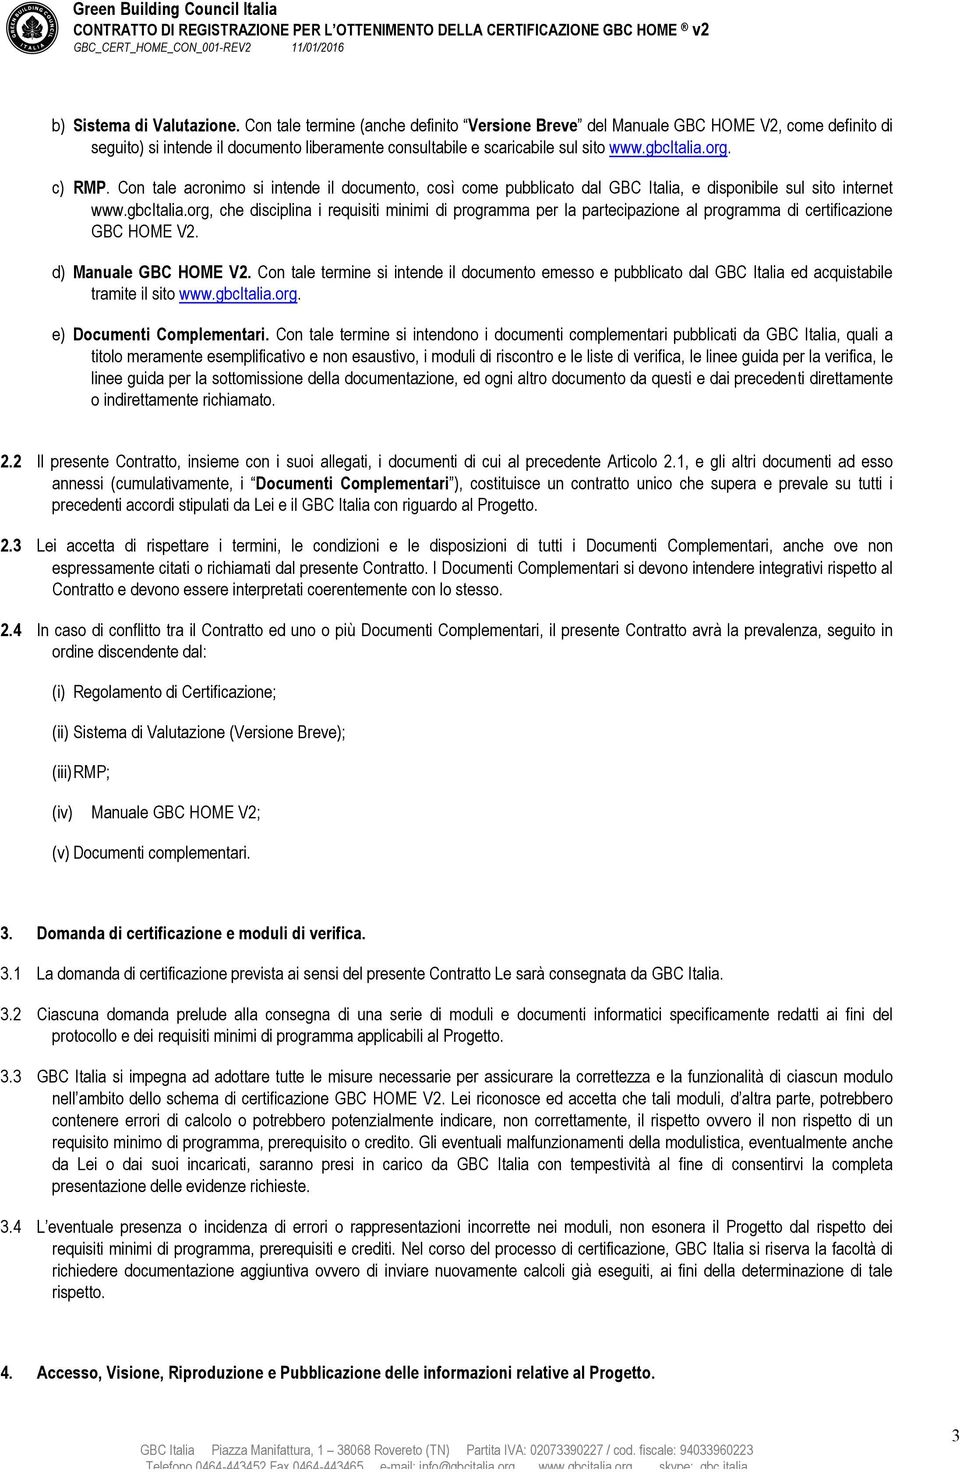 Con tale acronimo si intende il documento, così come pubblicato dal GBC Italia, e disponibile sul sito internet www.gbcitalia.